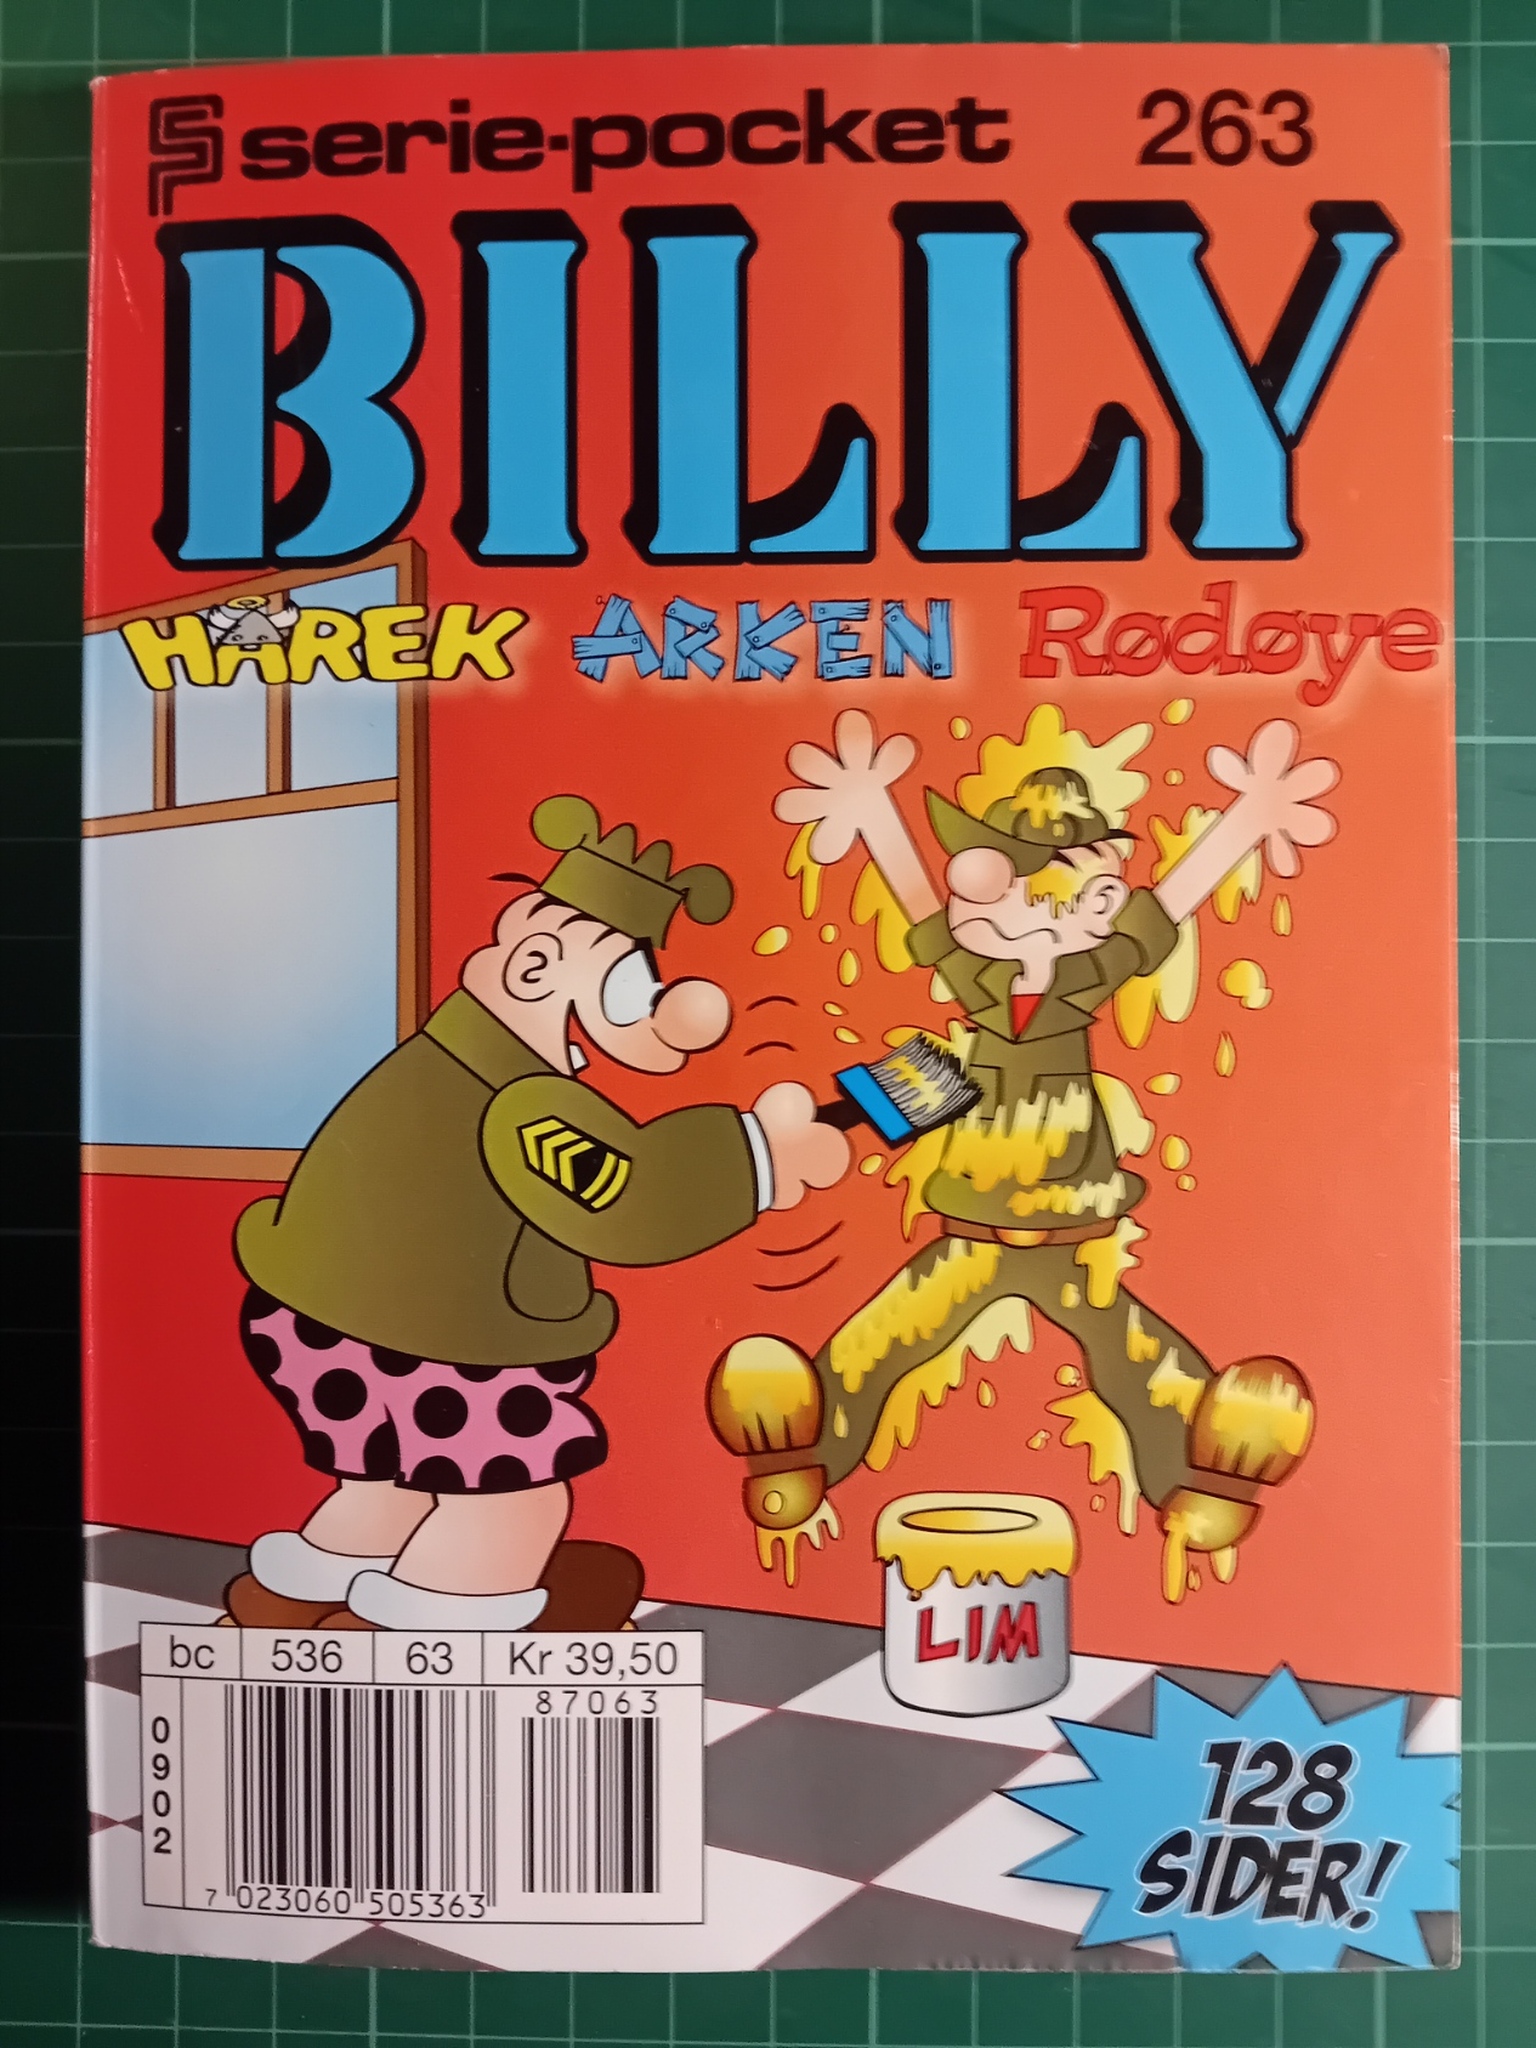 Serie-pocket 263 : Billy